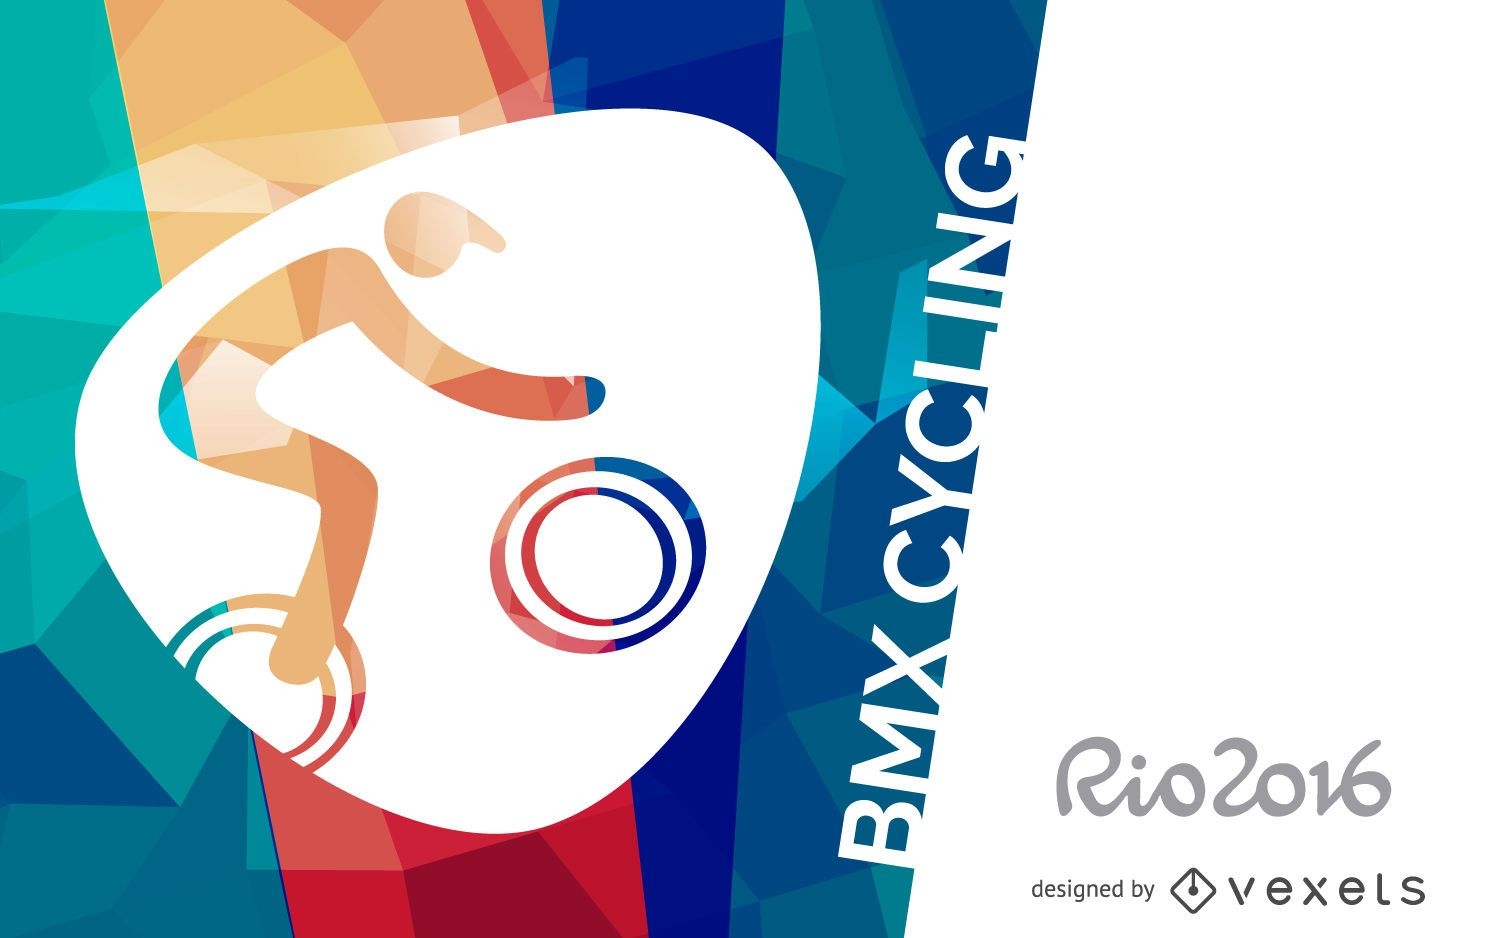 P?ster de ciclismo BMX Rio 2016